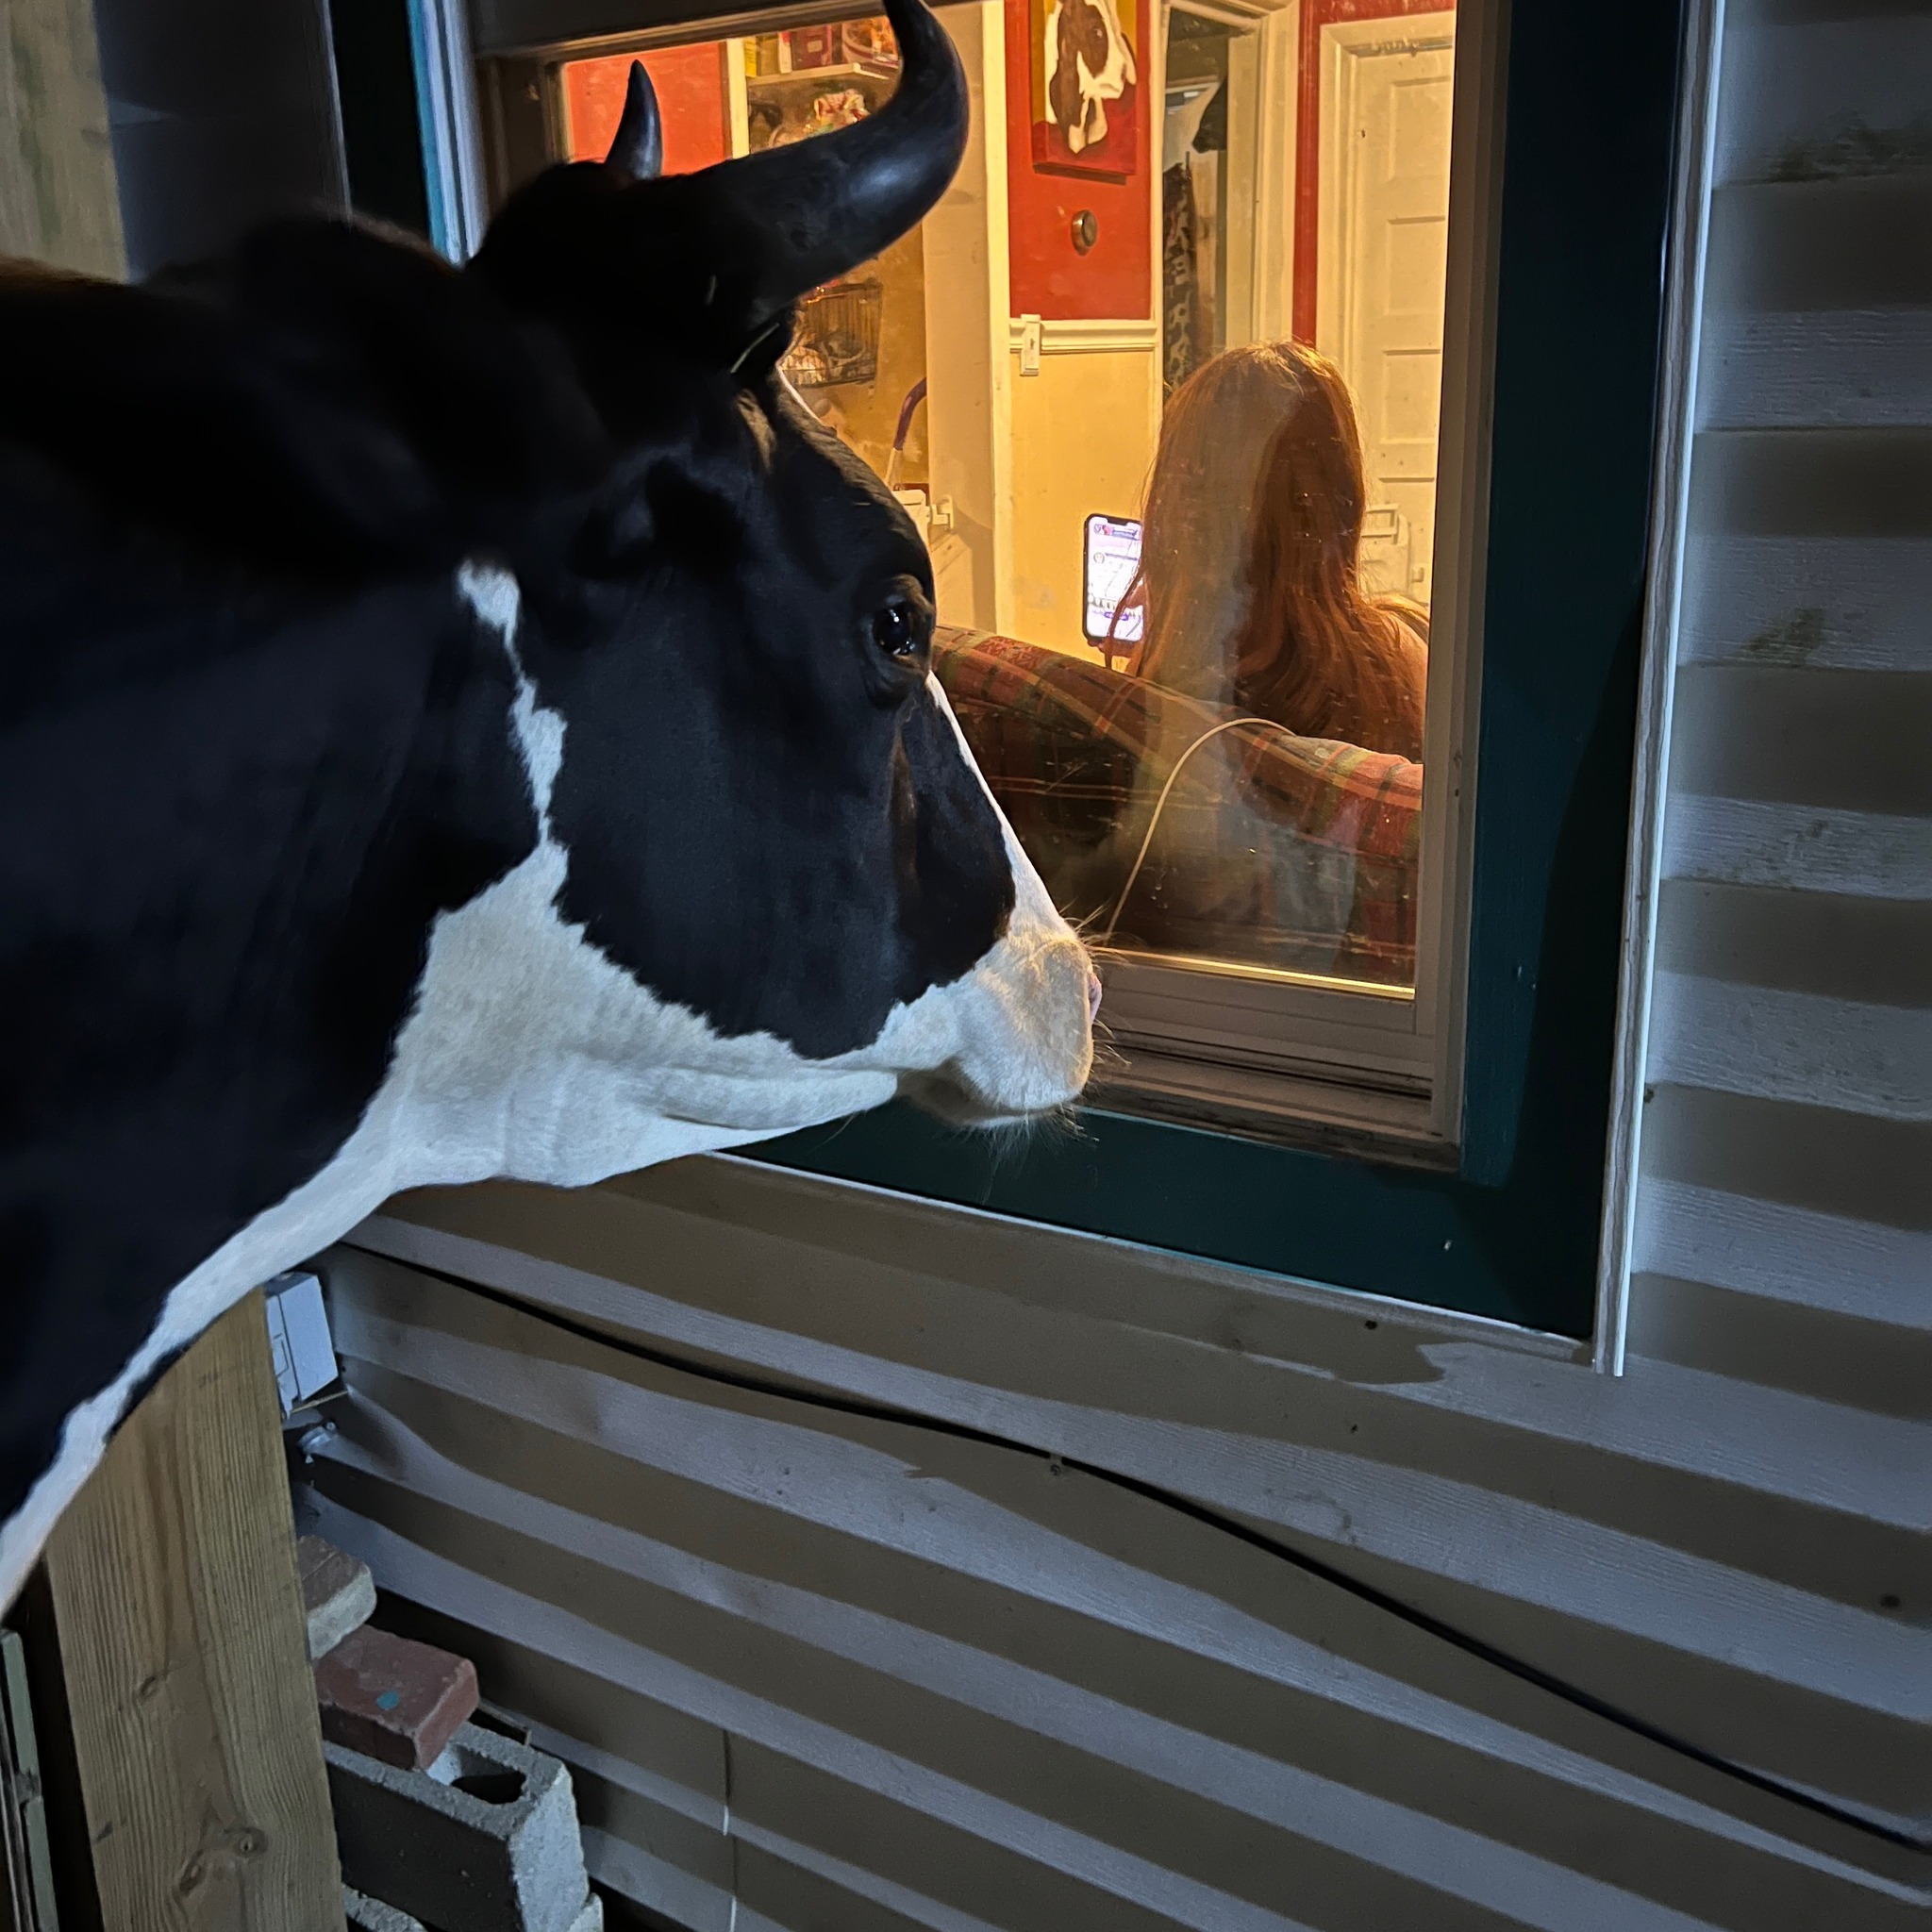 Jenna the cow peeking inside the farmer's window.